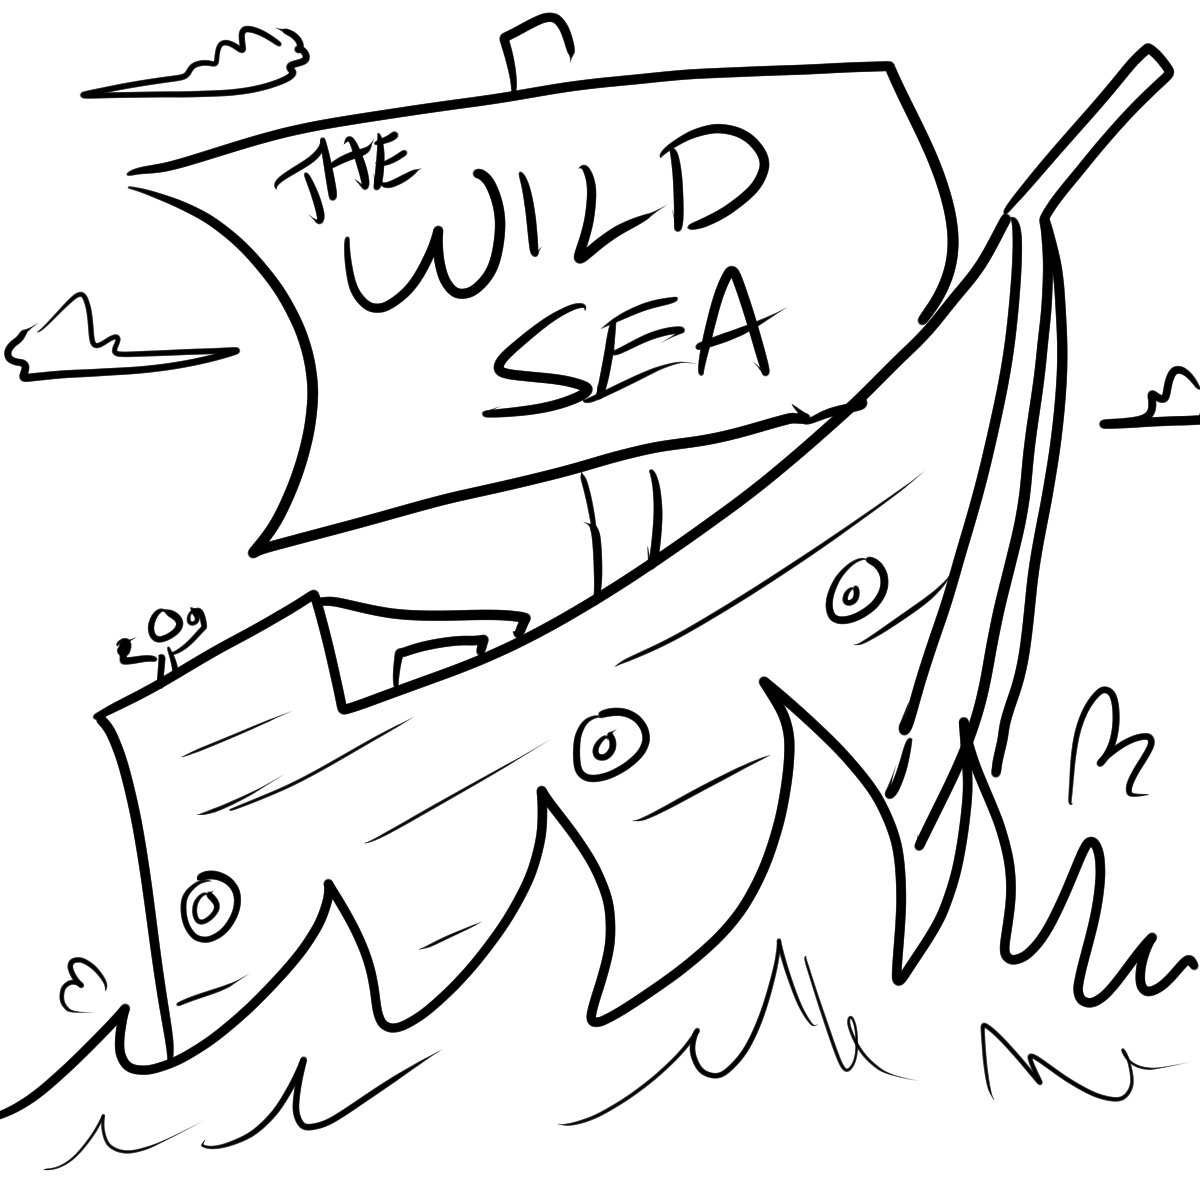 The Wild Sea